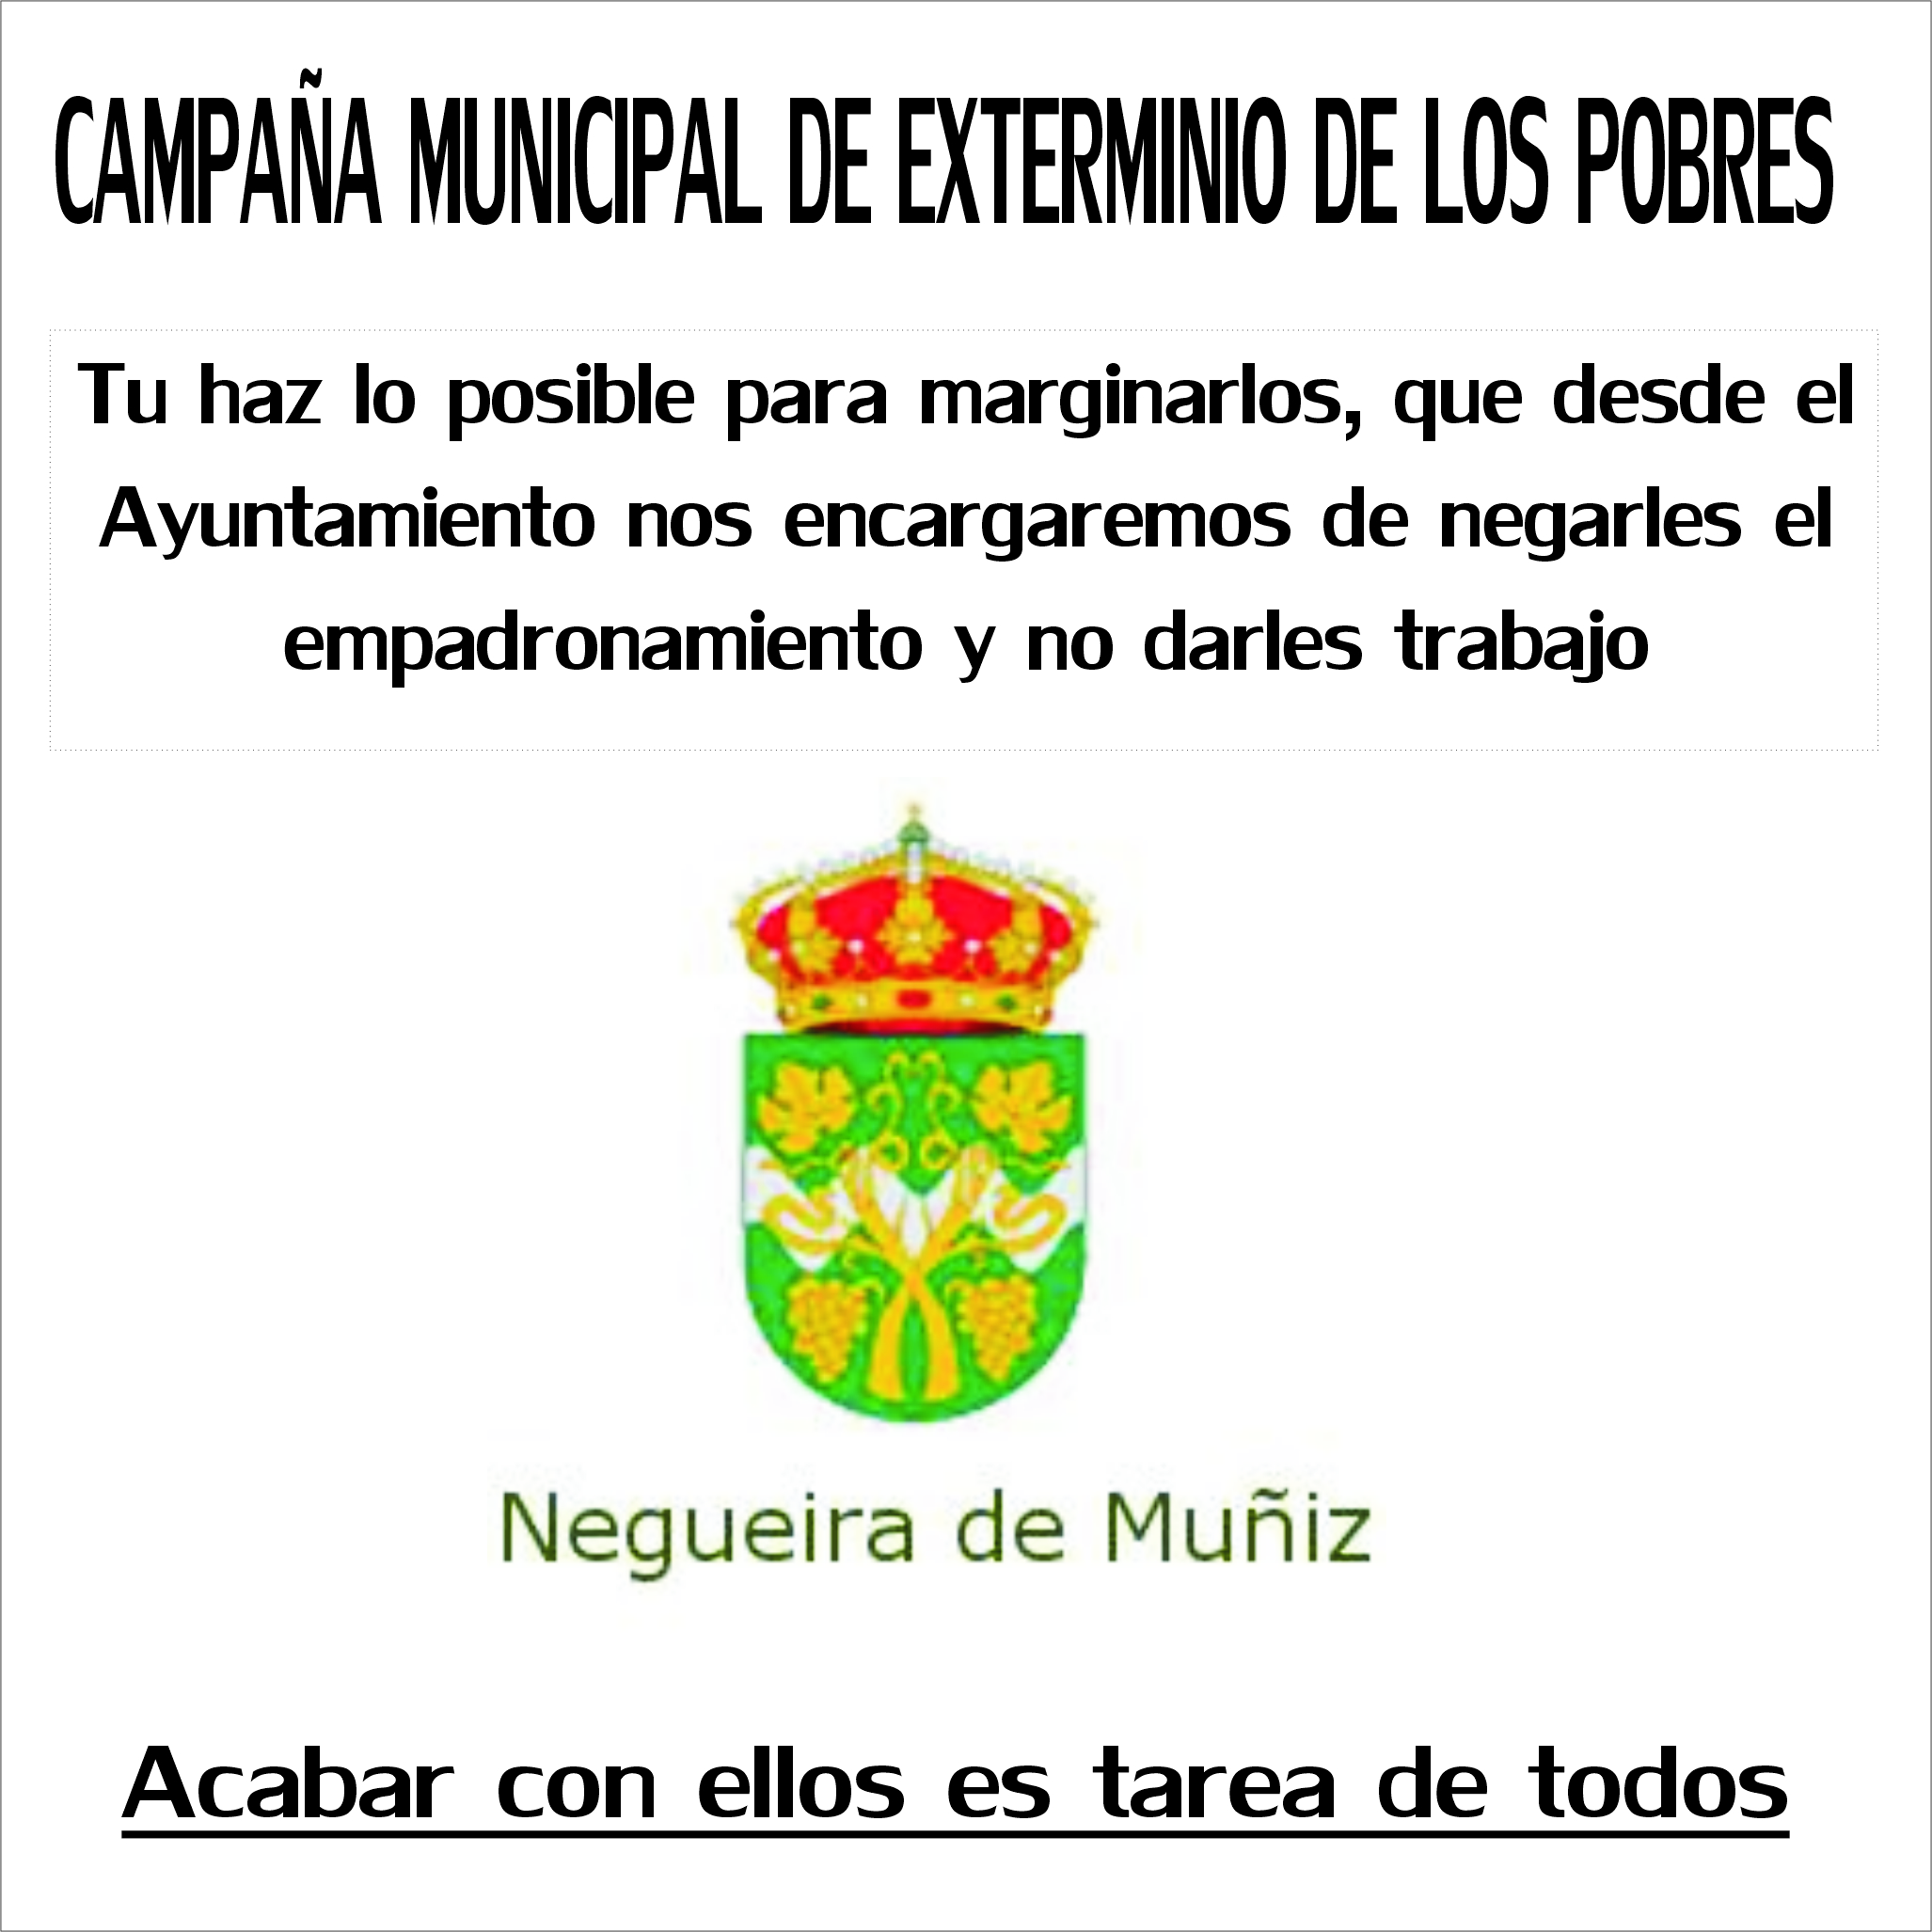 Ya que al Ayuntamiento de Negueira de Muñiz no le SIRVEN las personas en exclusión social...